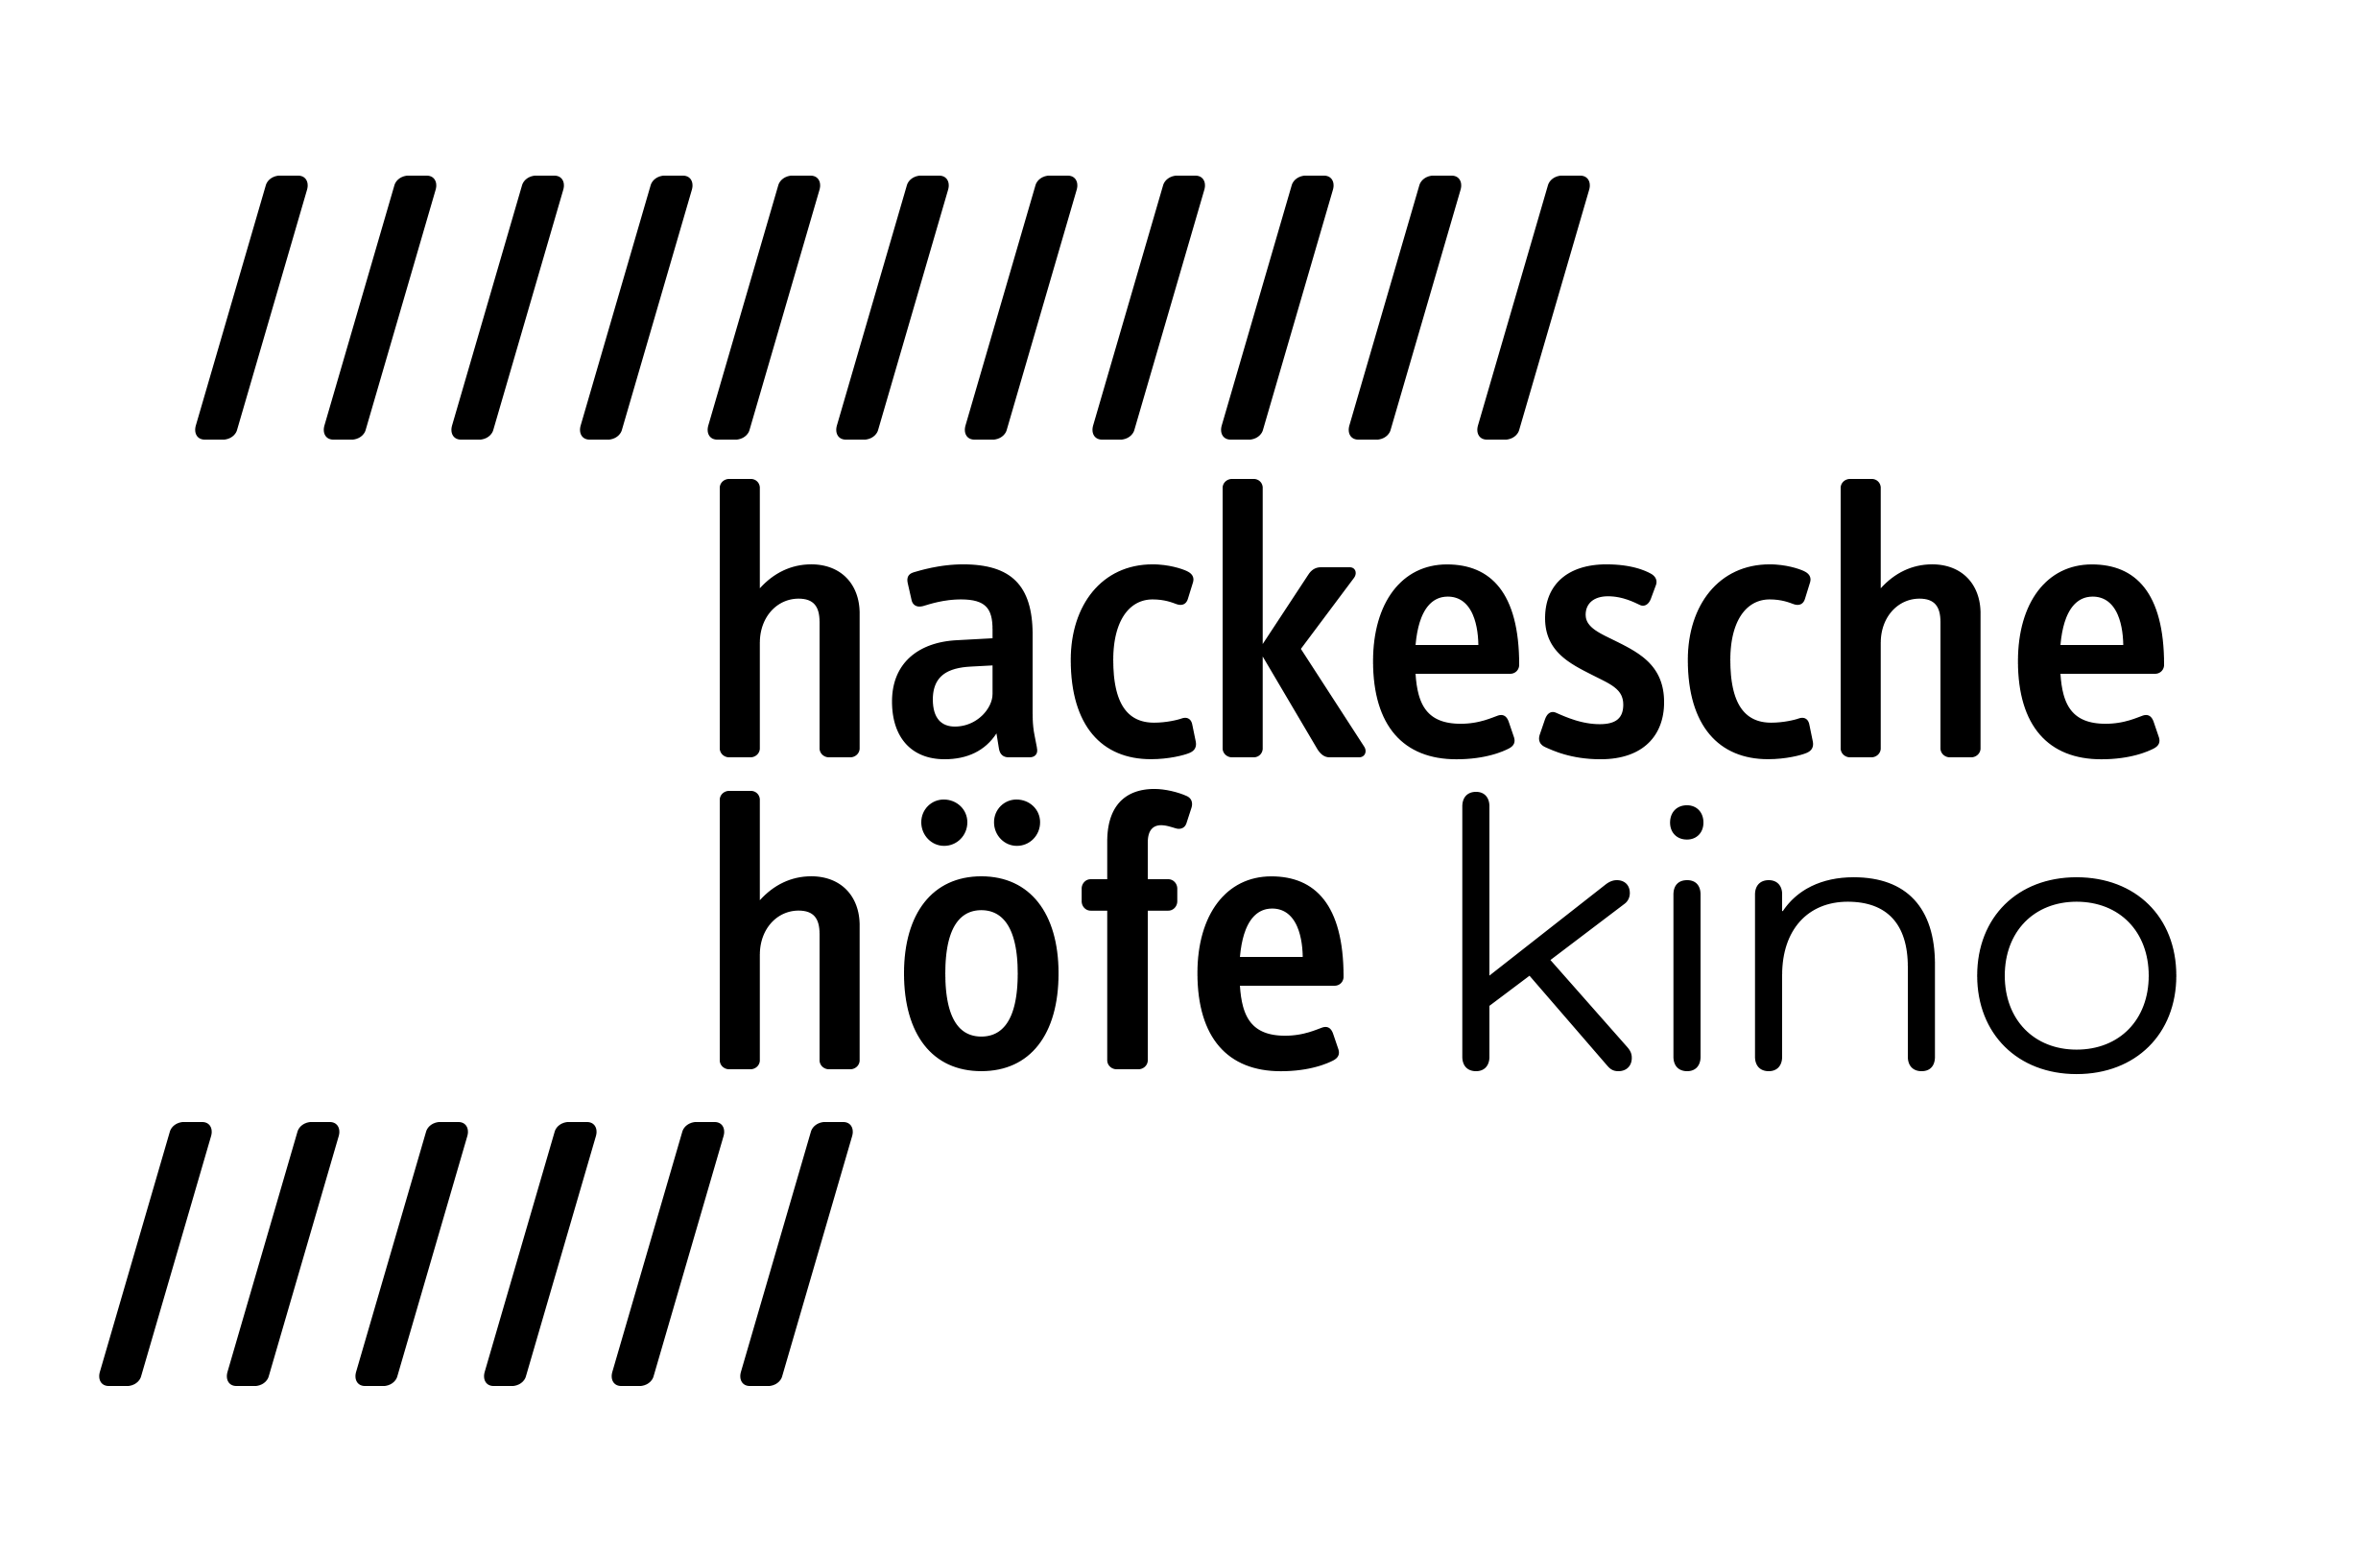 Hackesche Höfe Kino Logo